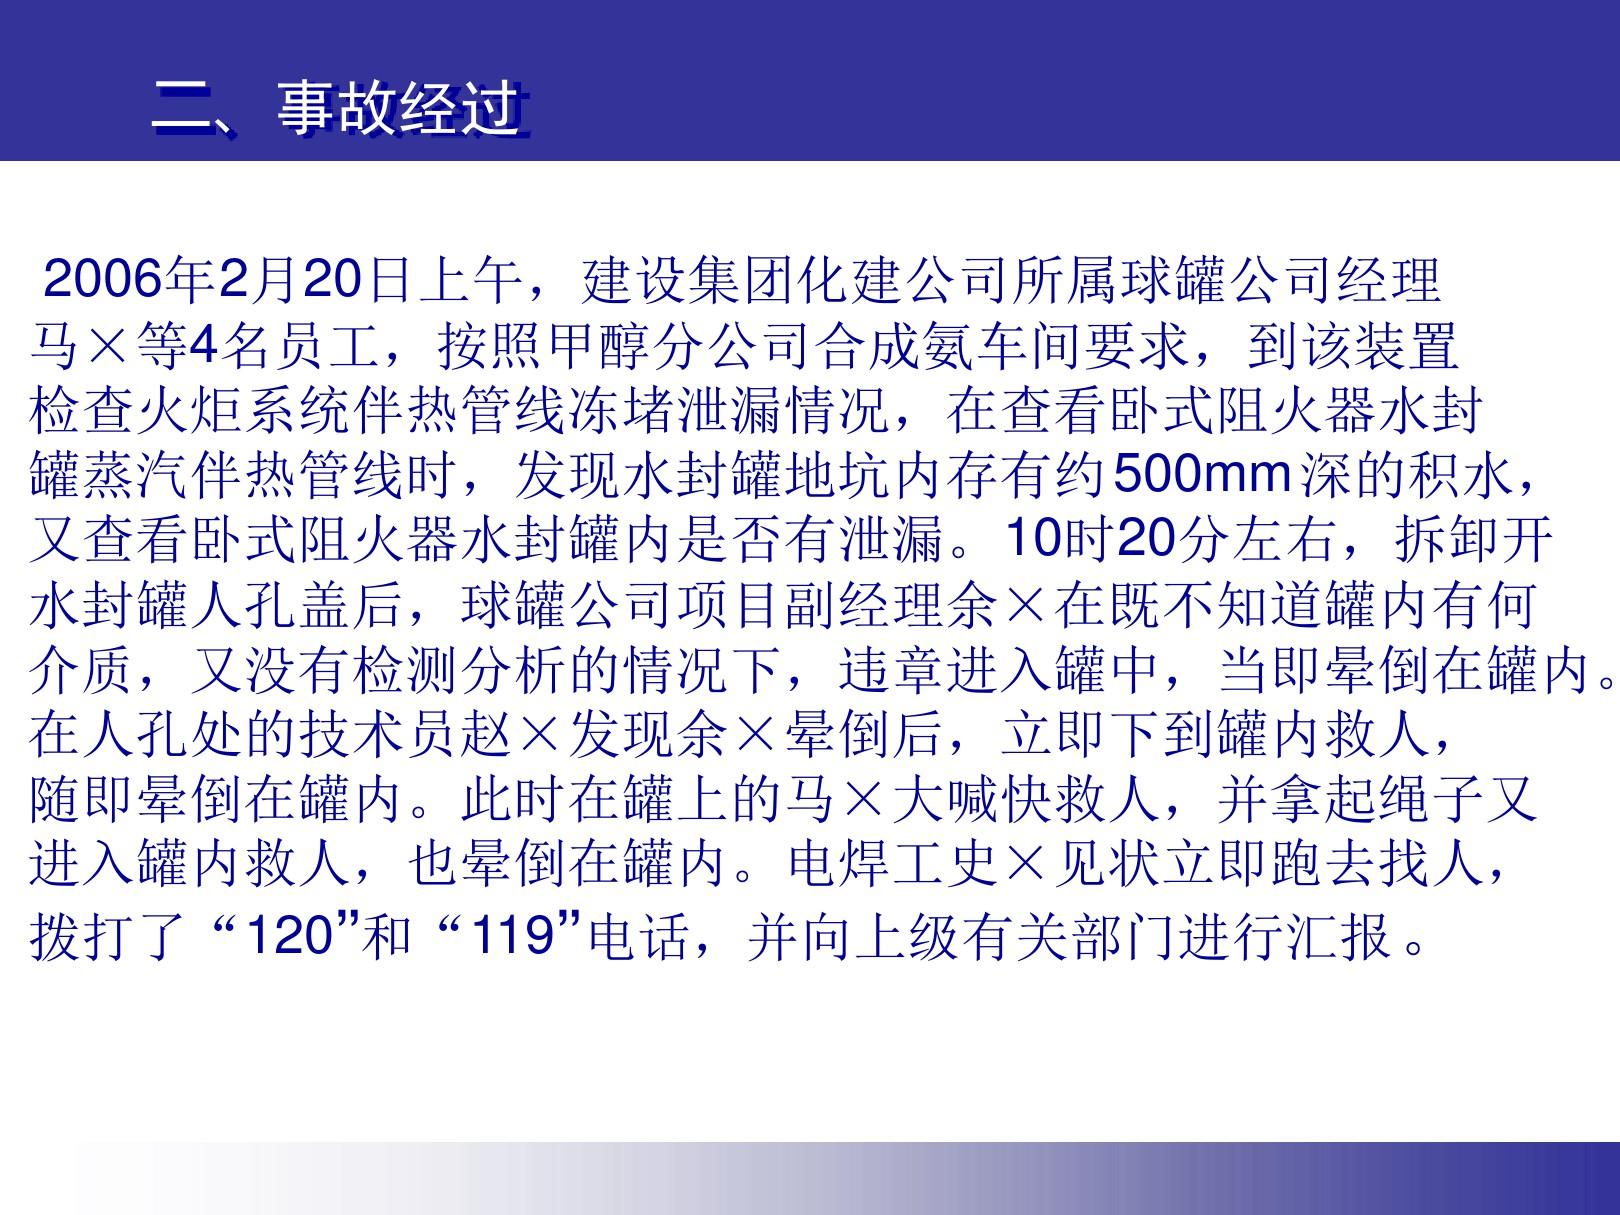 安全经验分享 大庆石油管理局化工集团甲醇分公司2 20氮气窒息事故案例